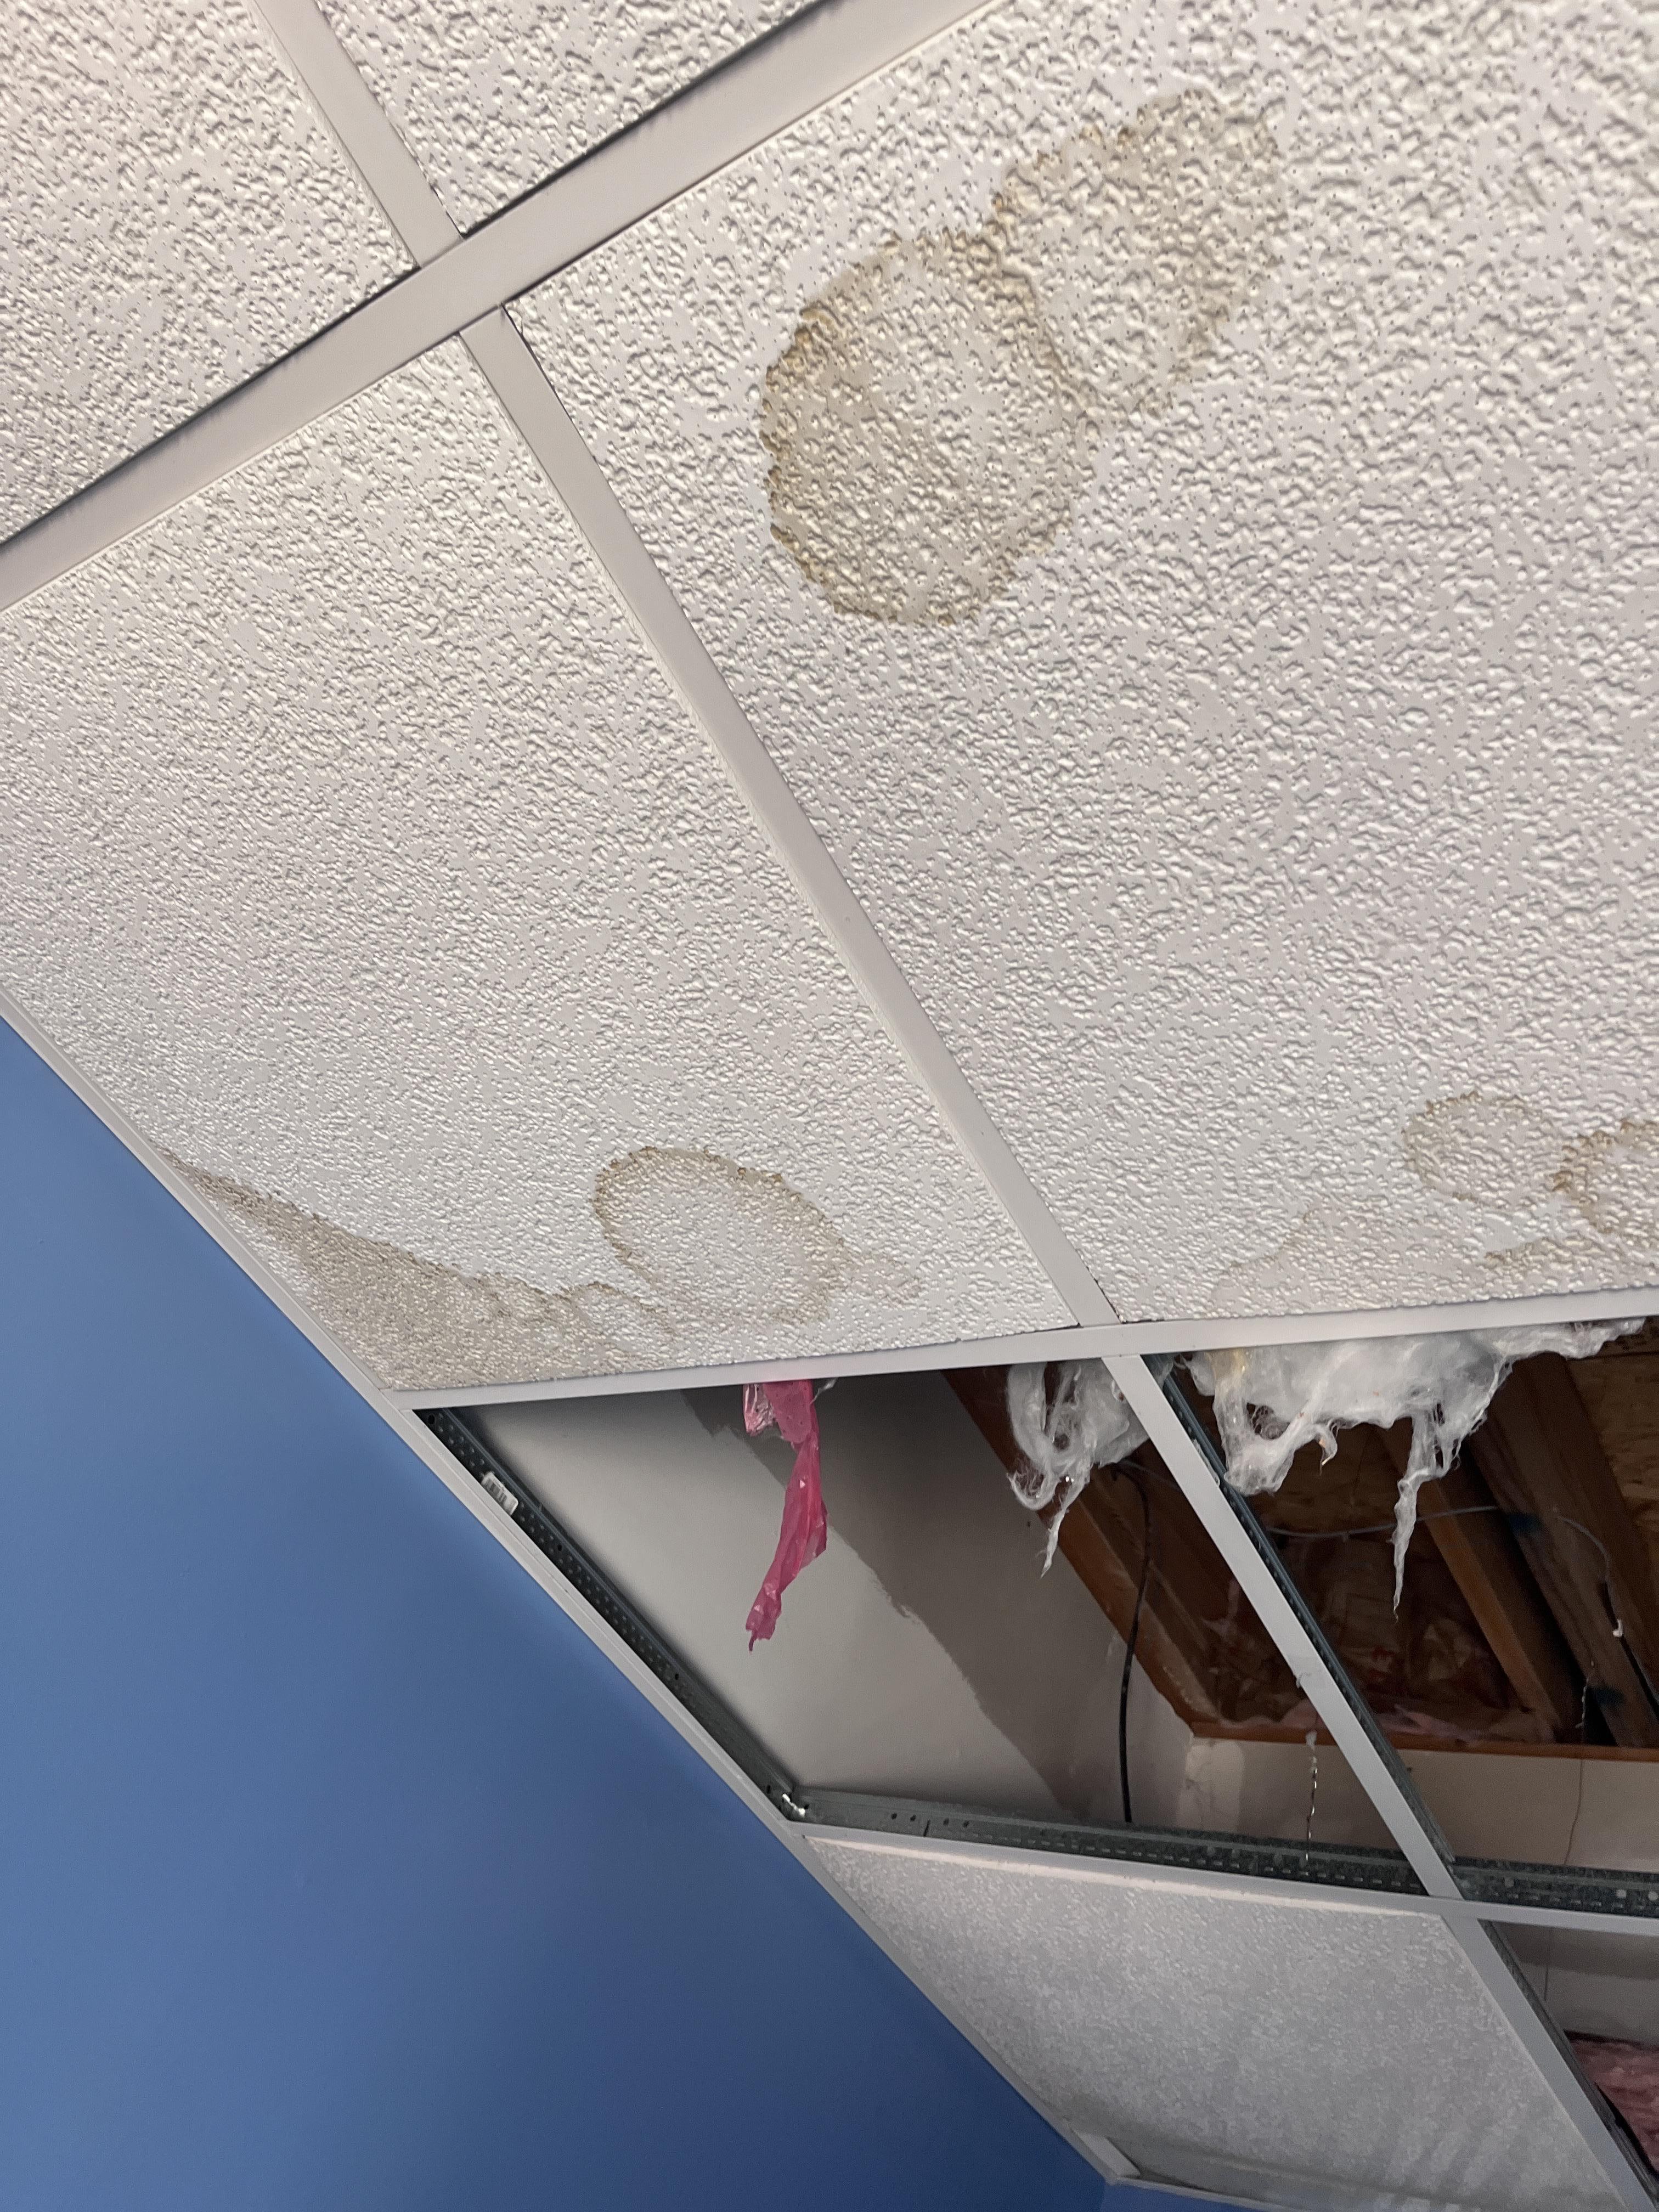 Water leak in ceiling